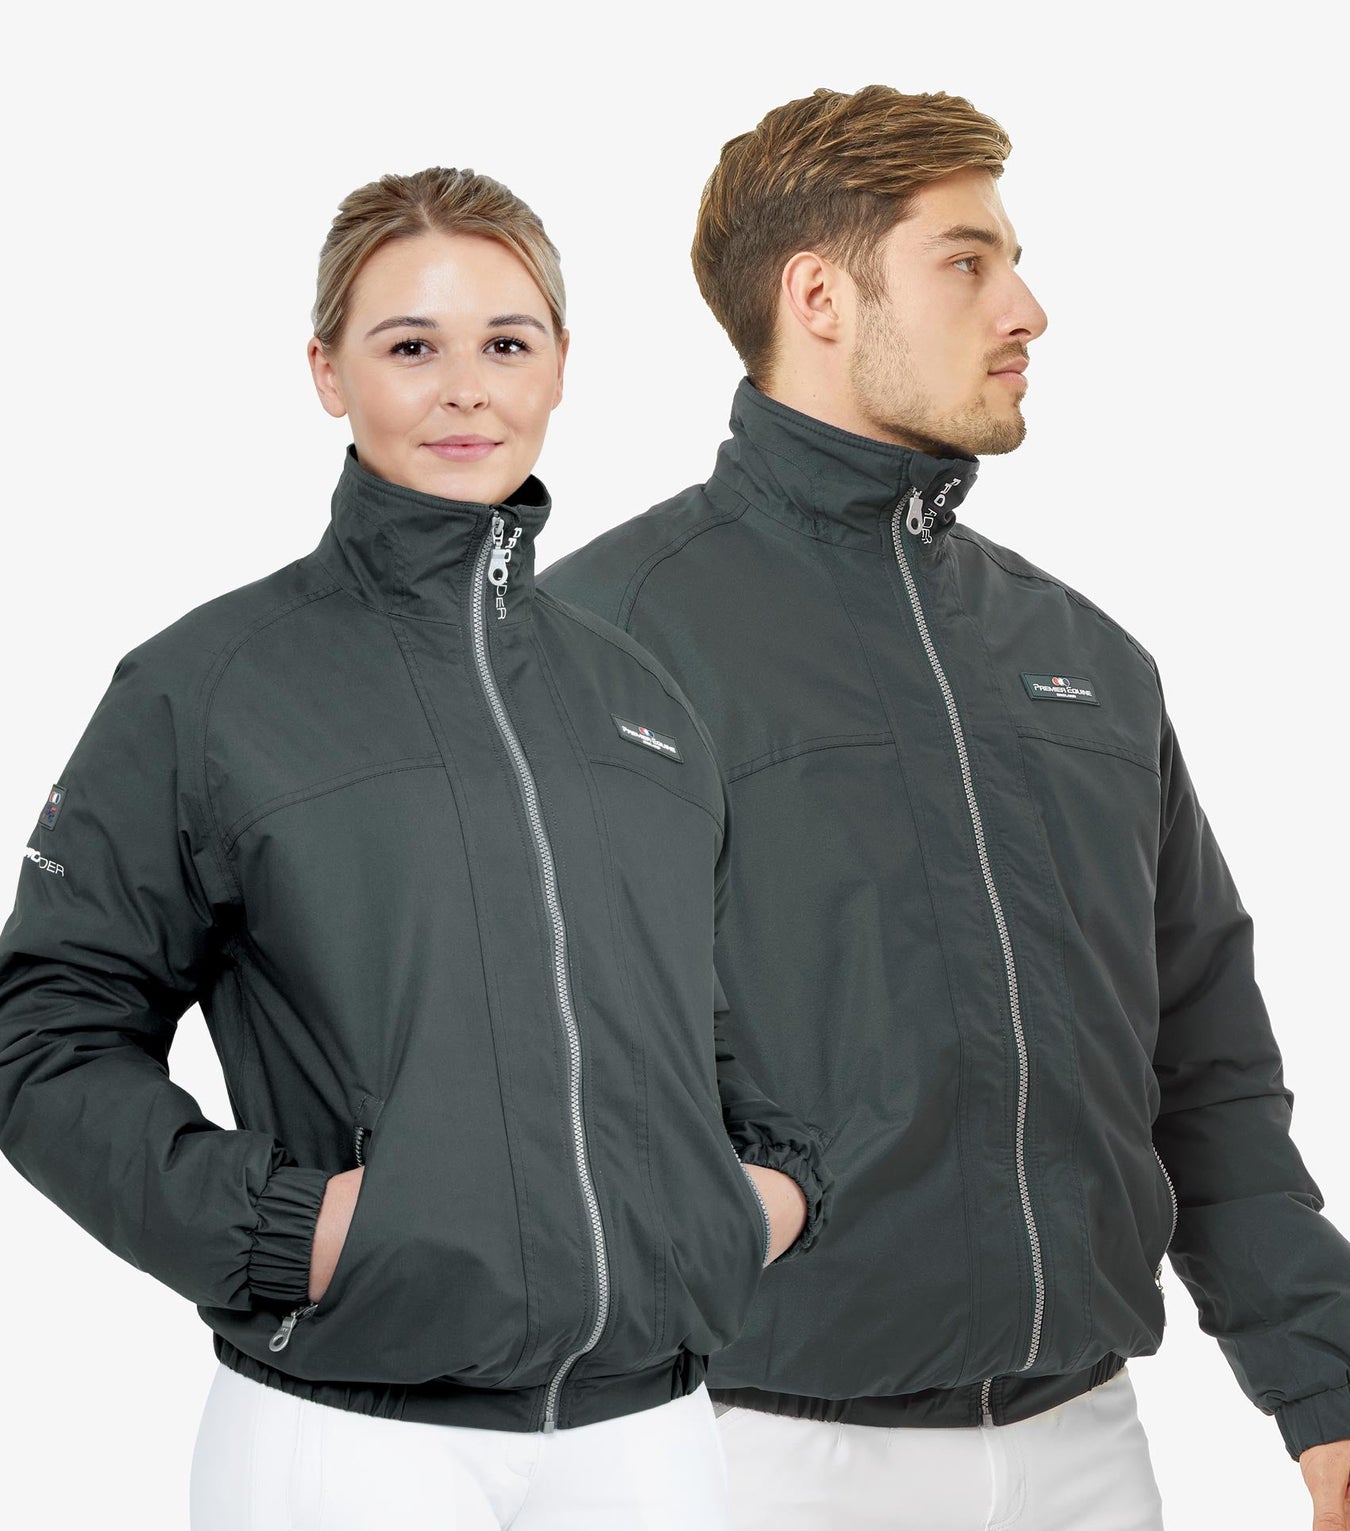 Unisex Jackets and Coats